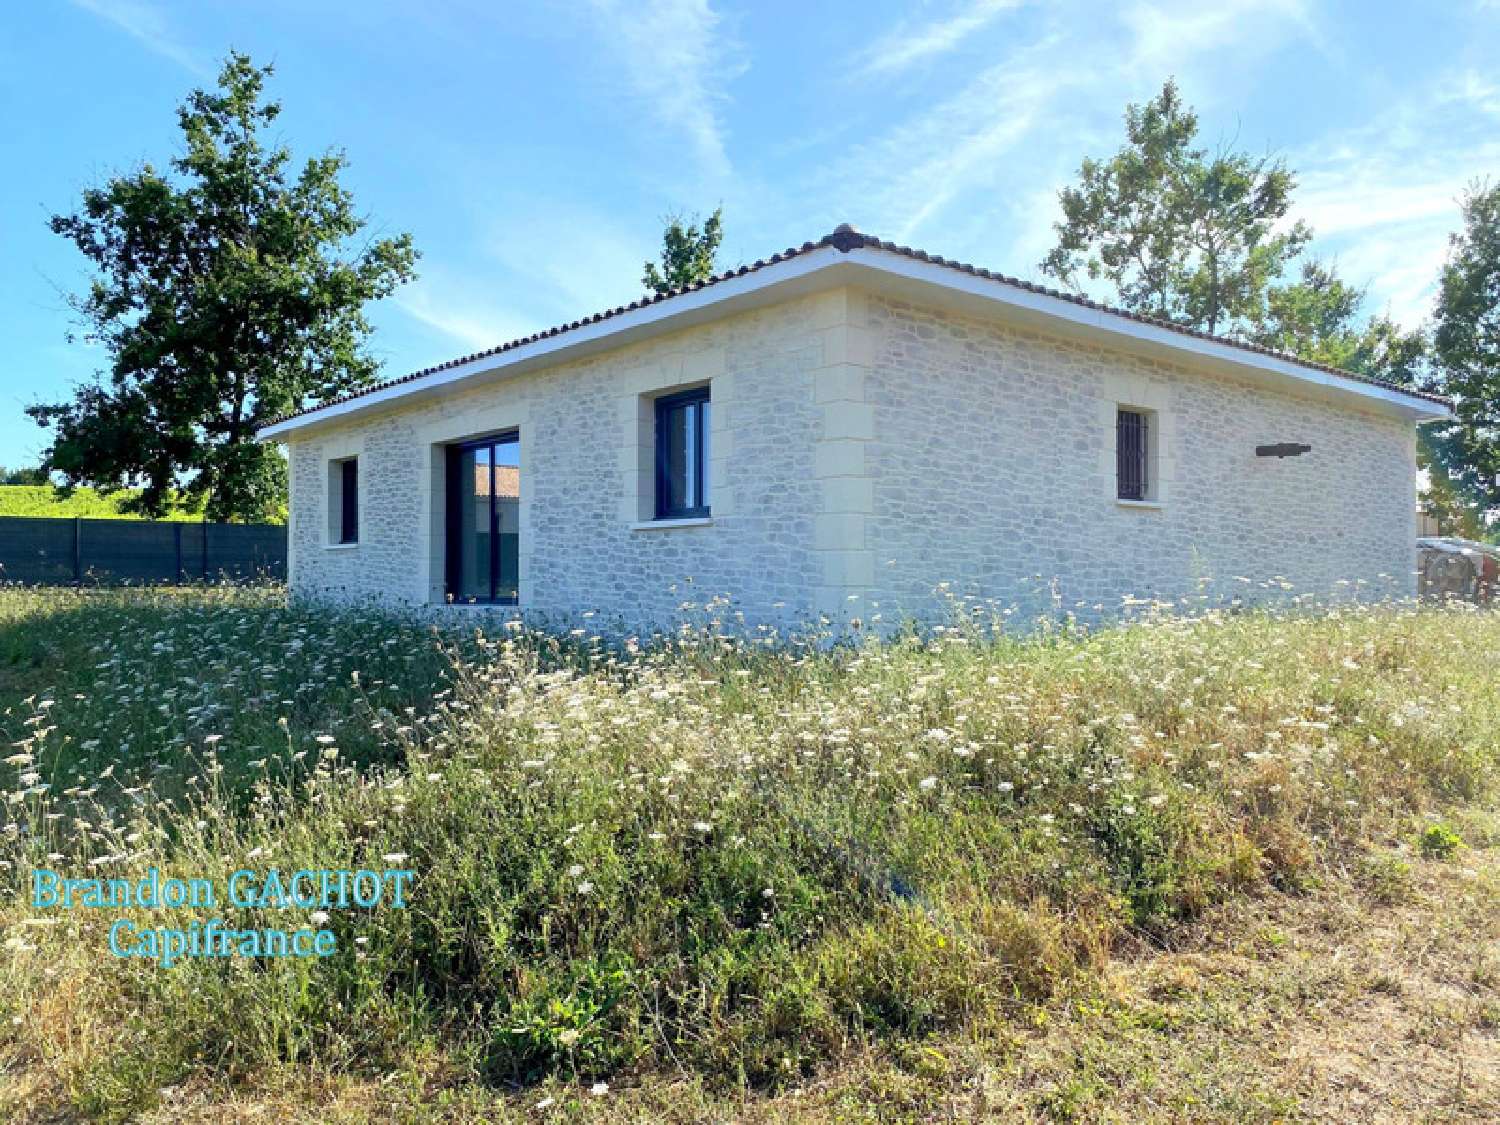  à vendre maison Saussignac Dordogne 2